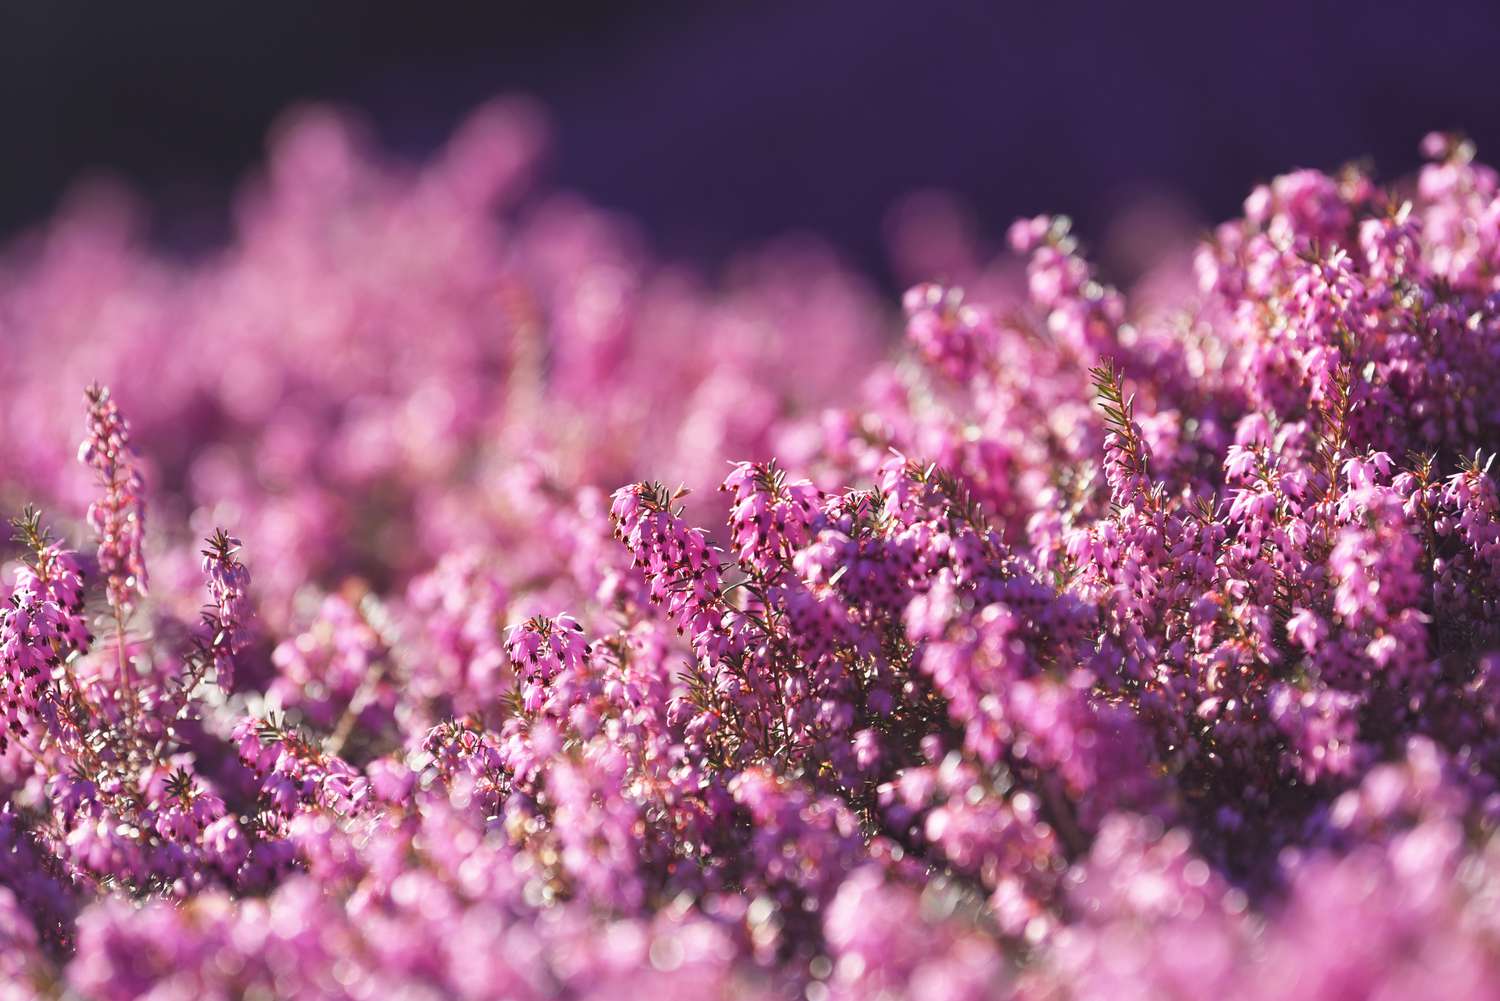 Planta de urze de inverno com pequenas flores cor-de-rosa em hastes semelhantes a agulhas